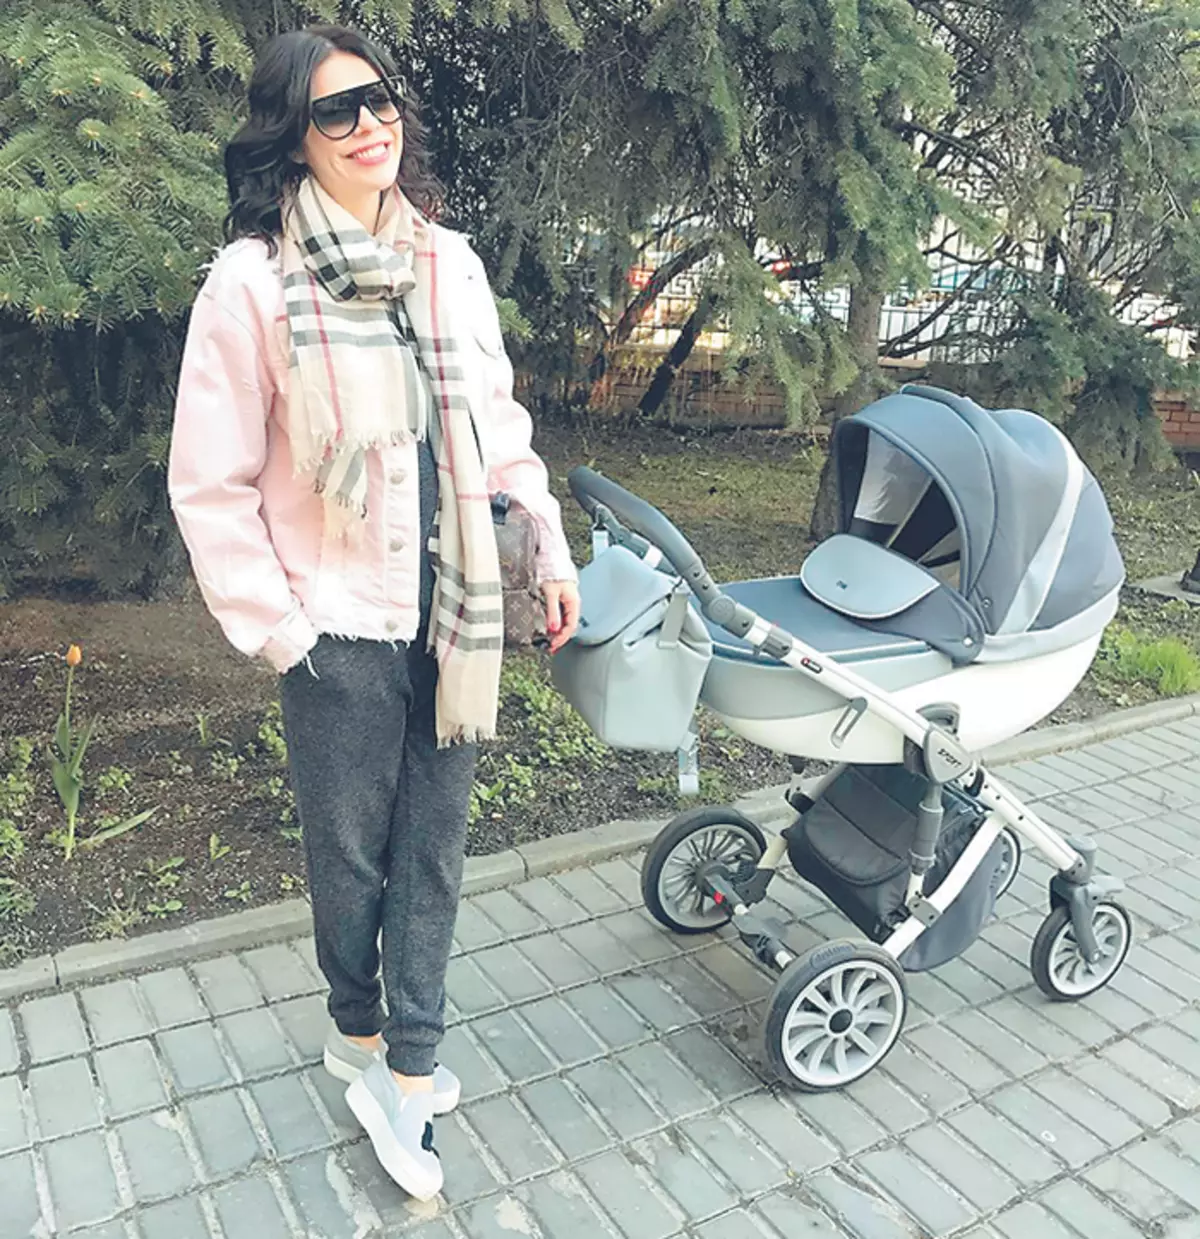 Promenades quotidiennes avec bébé aide Stska pour retourner la forme précédente. Anastasia n'oublie pas non plus les cours de yoga réguliers